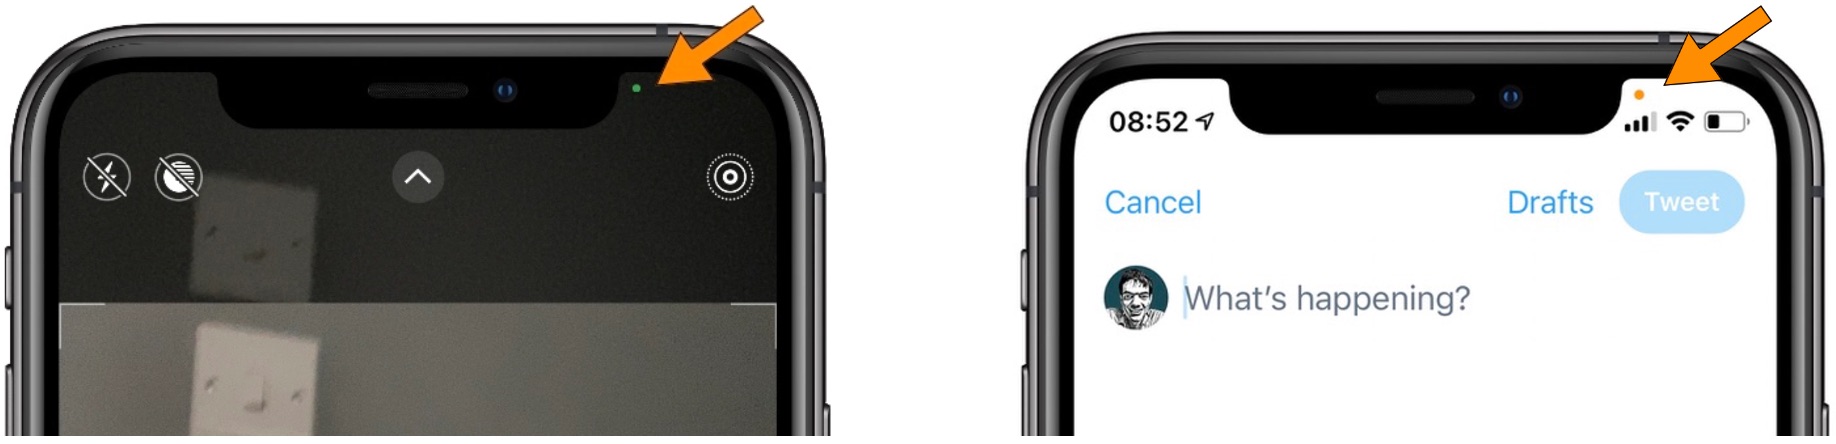 Así es como se representan los puntos que indican que la cámara o el micrófono están siendo utilizados en el iPhone 12